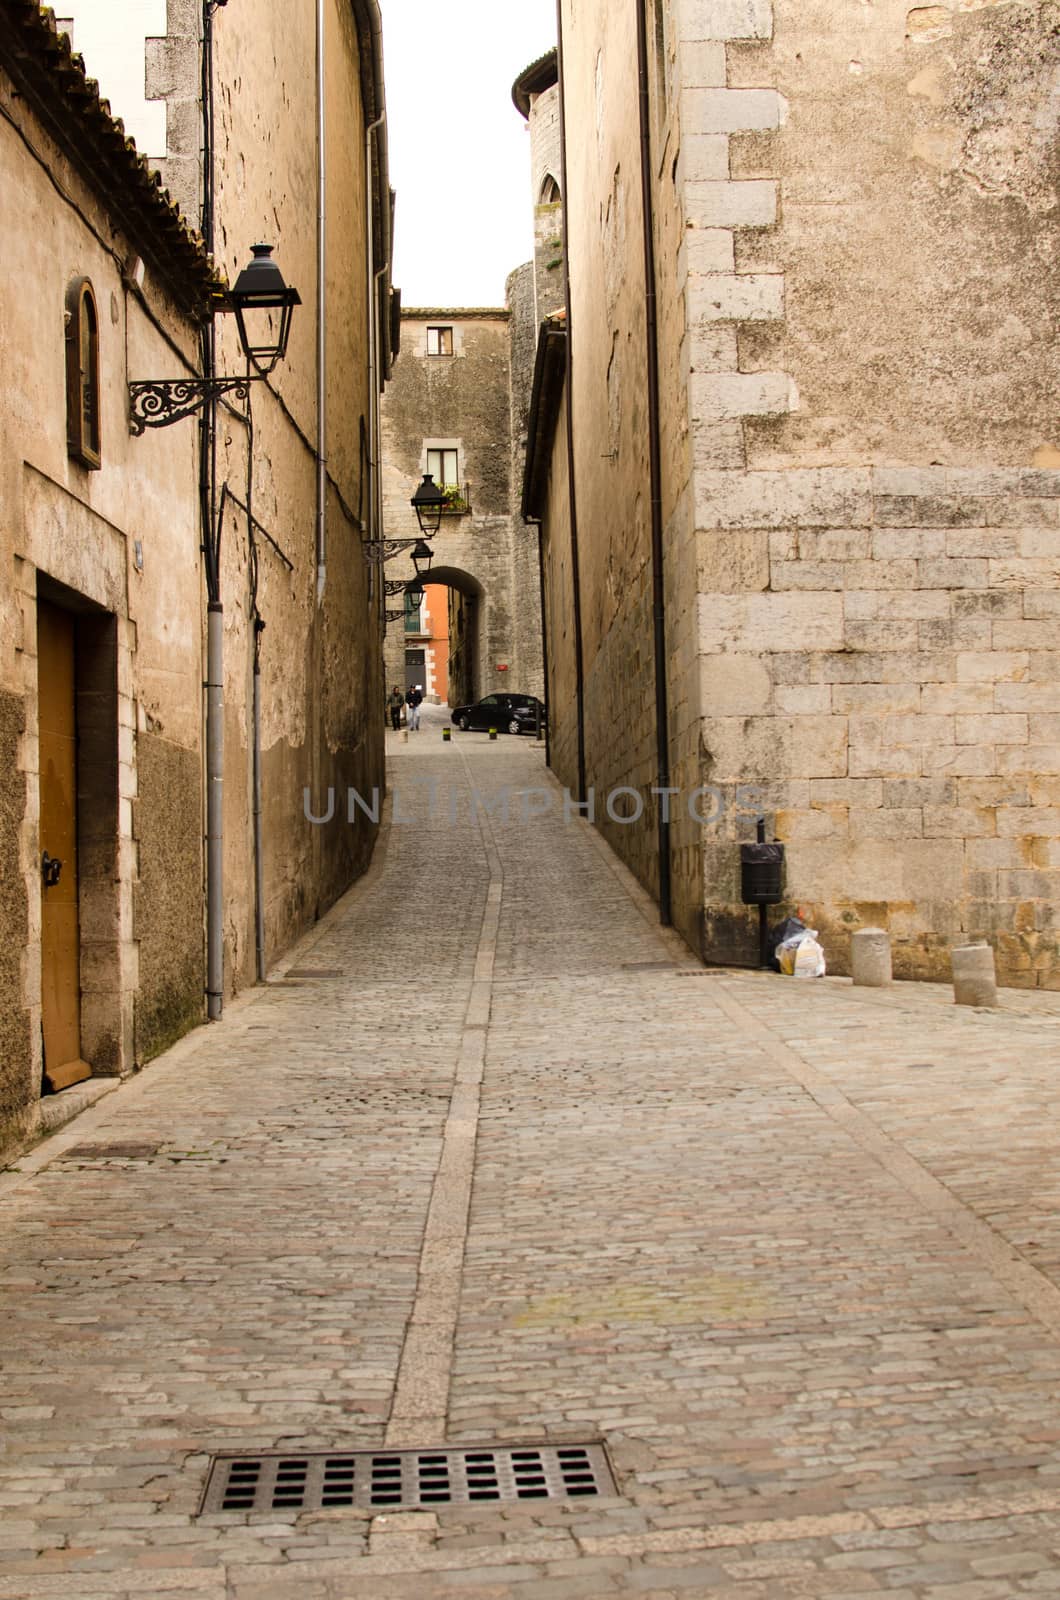 Street of gerona, Spain. by lauria